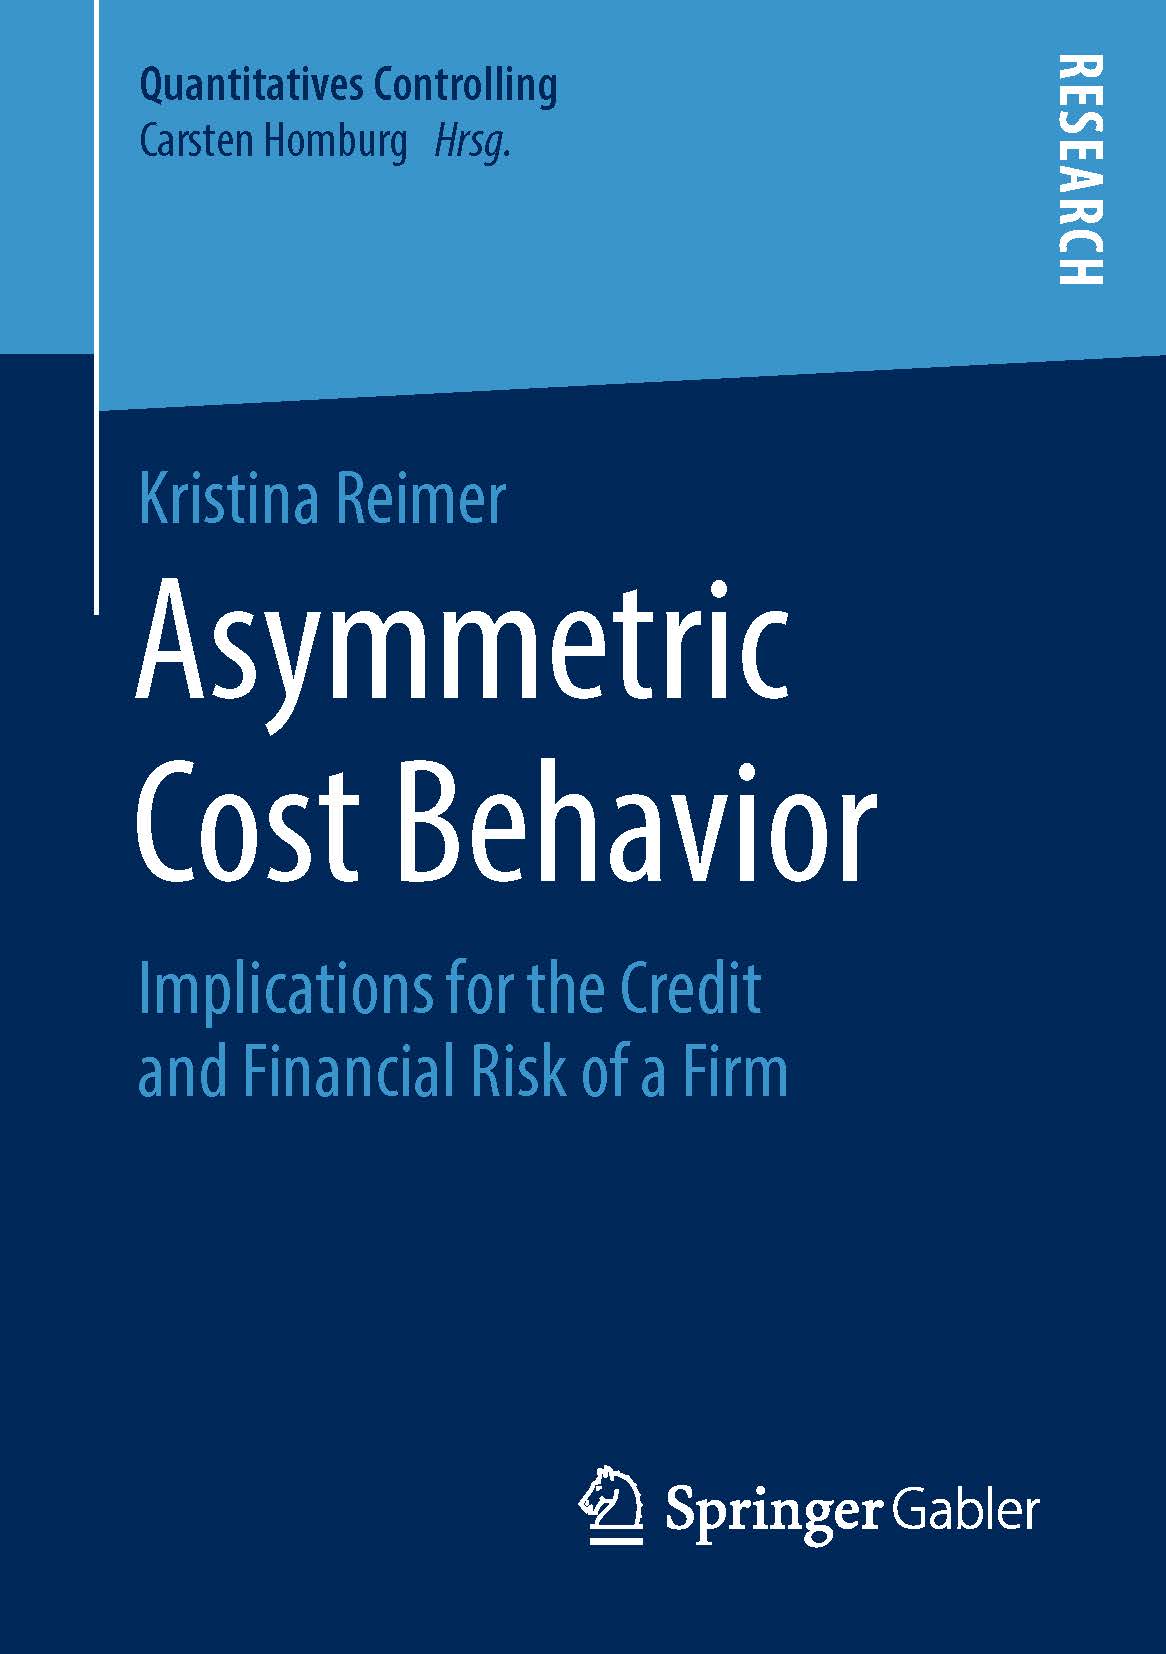 页面提取自－2019_Book_Asymmetric Cost Behavior.jpg